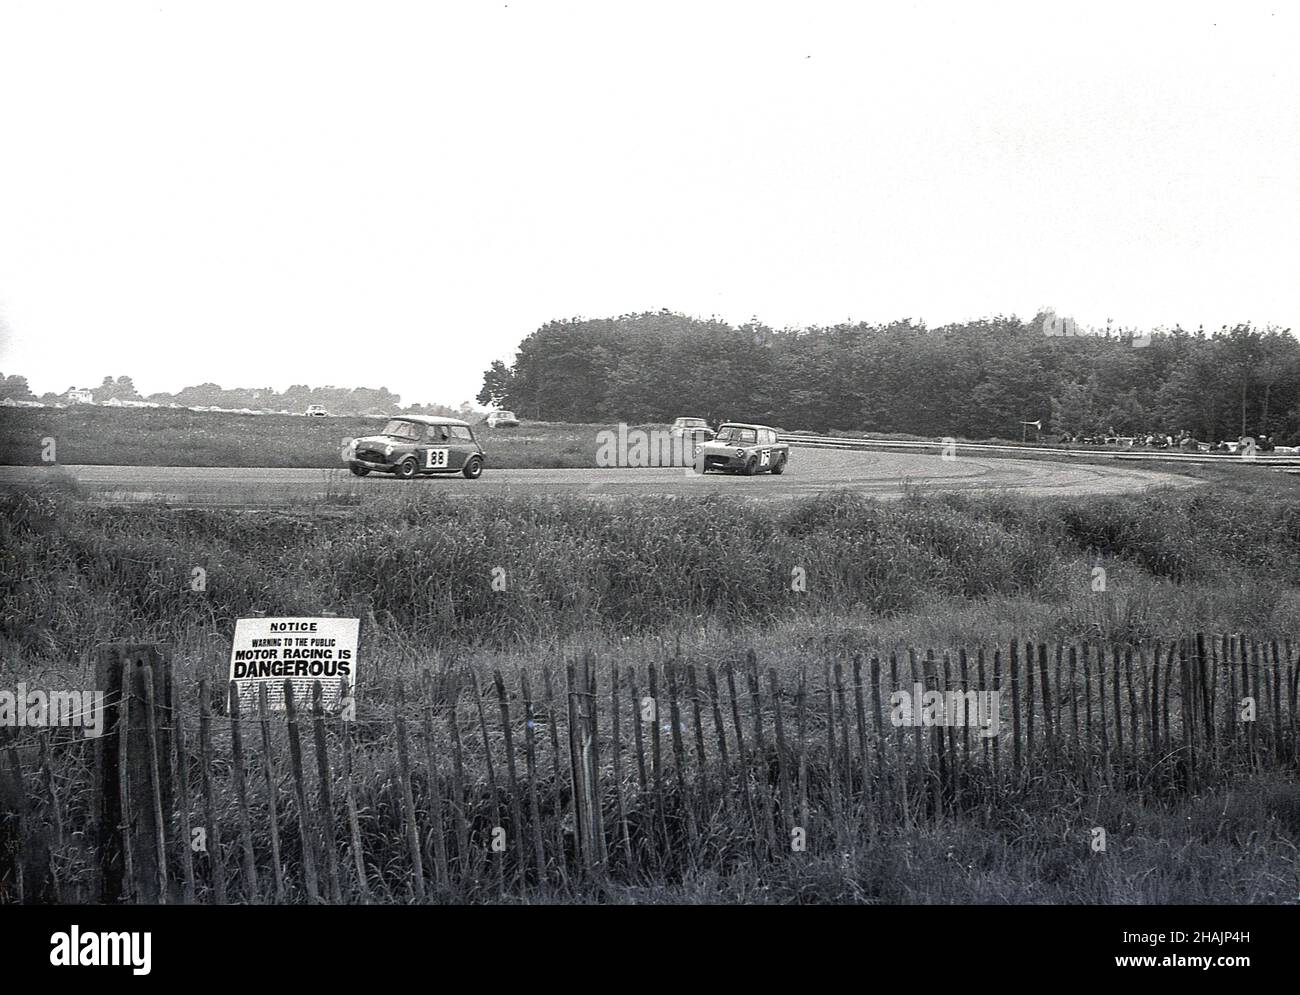 1960s, storico, motorsport, auto da corsa, Inghilterra, REGNO UNITO. Lontano dalla pista, un piccolo avvertimento sull'erba da una breve recinzione in legno dice, Motor Racing è PERICOLOSO. Foto Stock